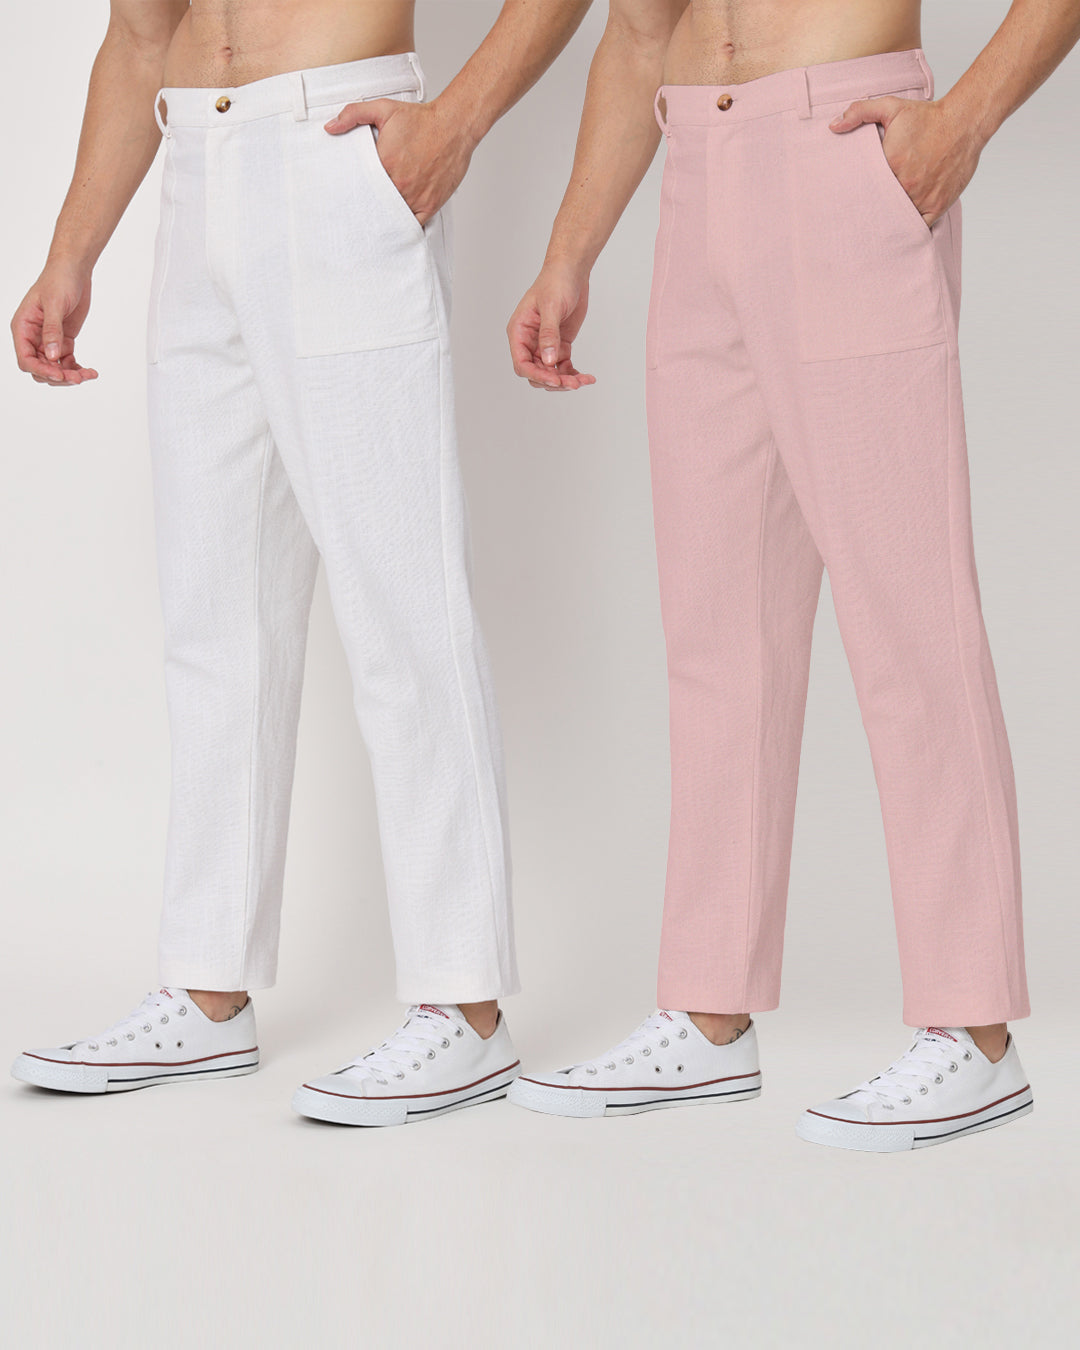 Combo : Comfy Ease White & Fondant Pink Men's Pants - Set of 2